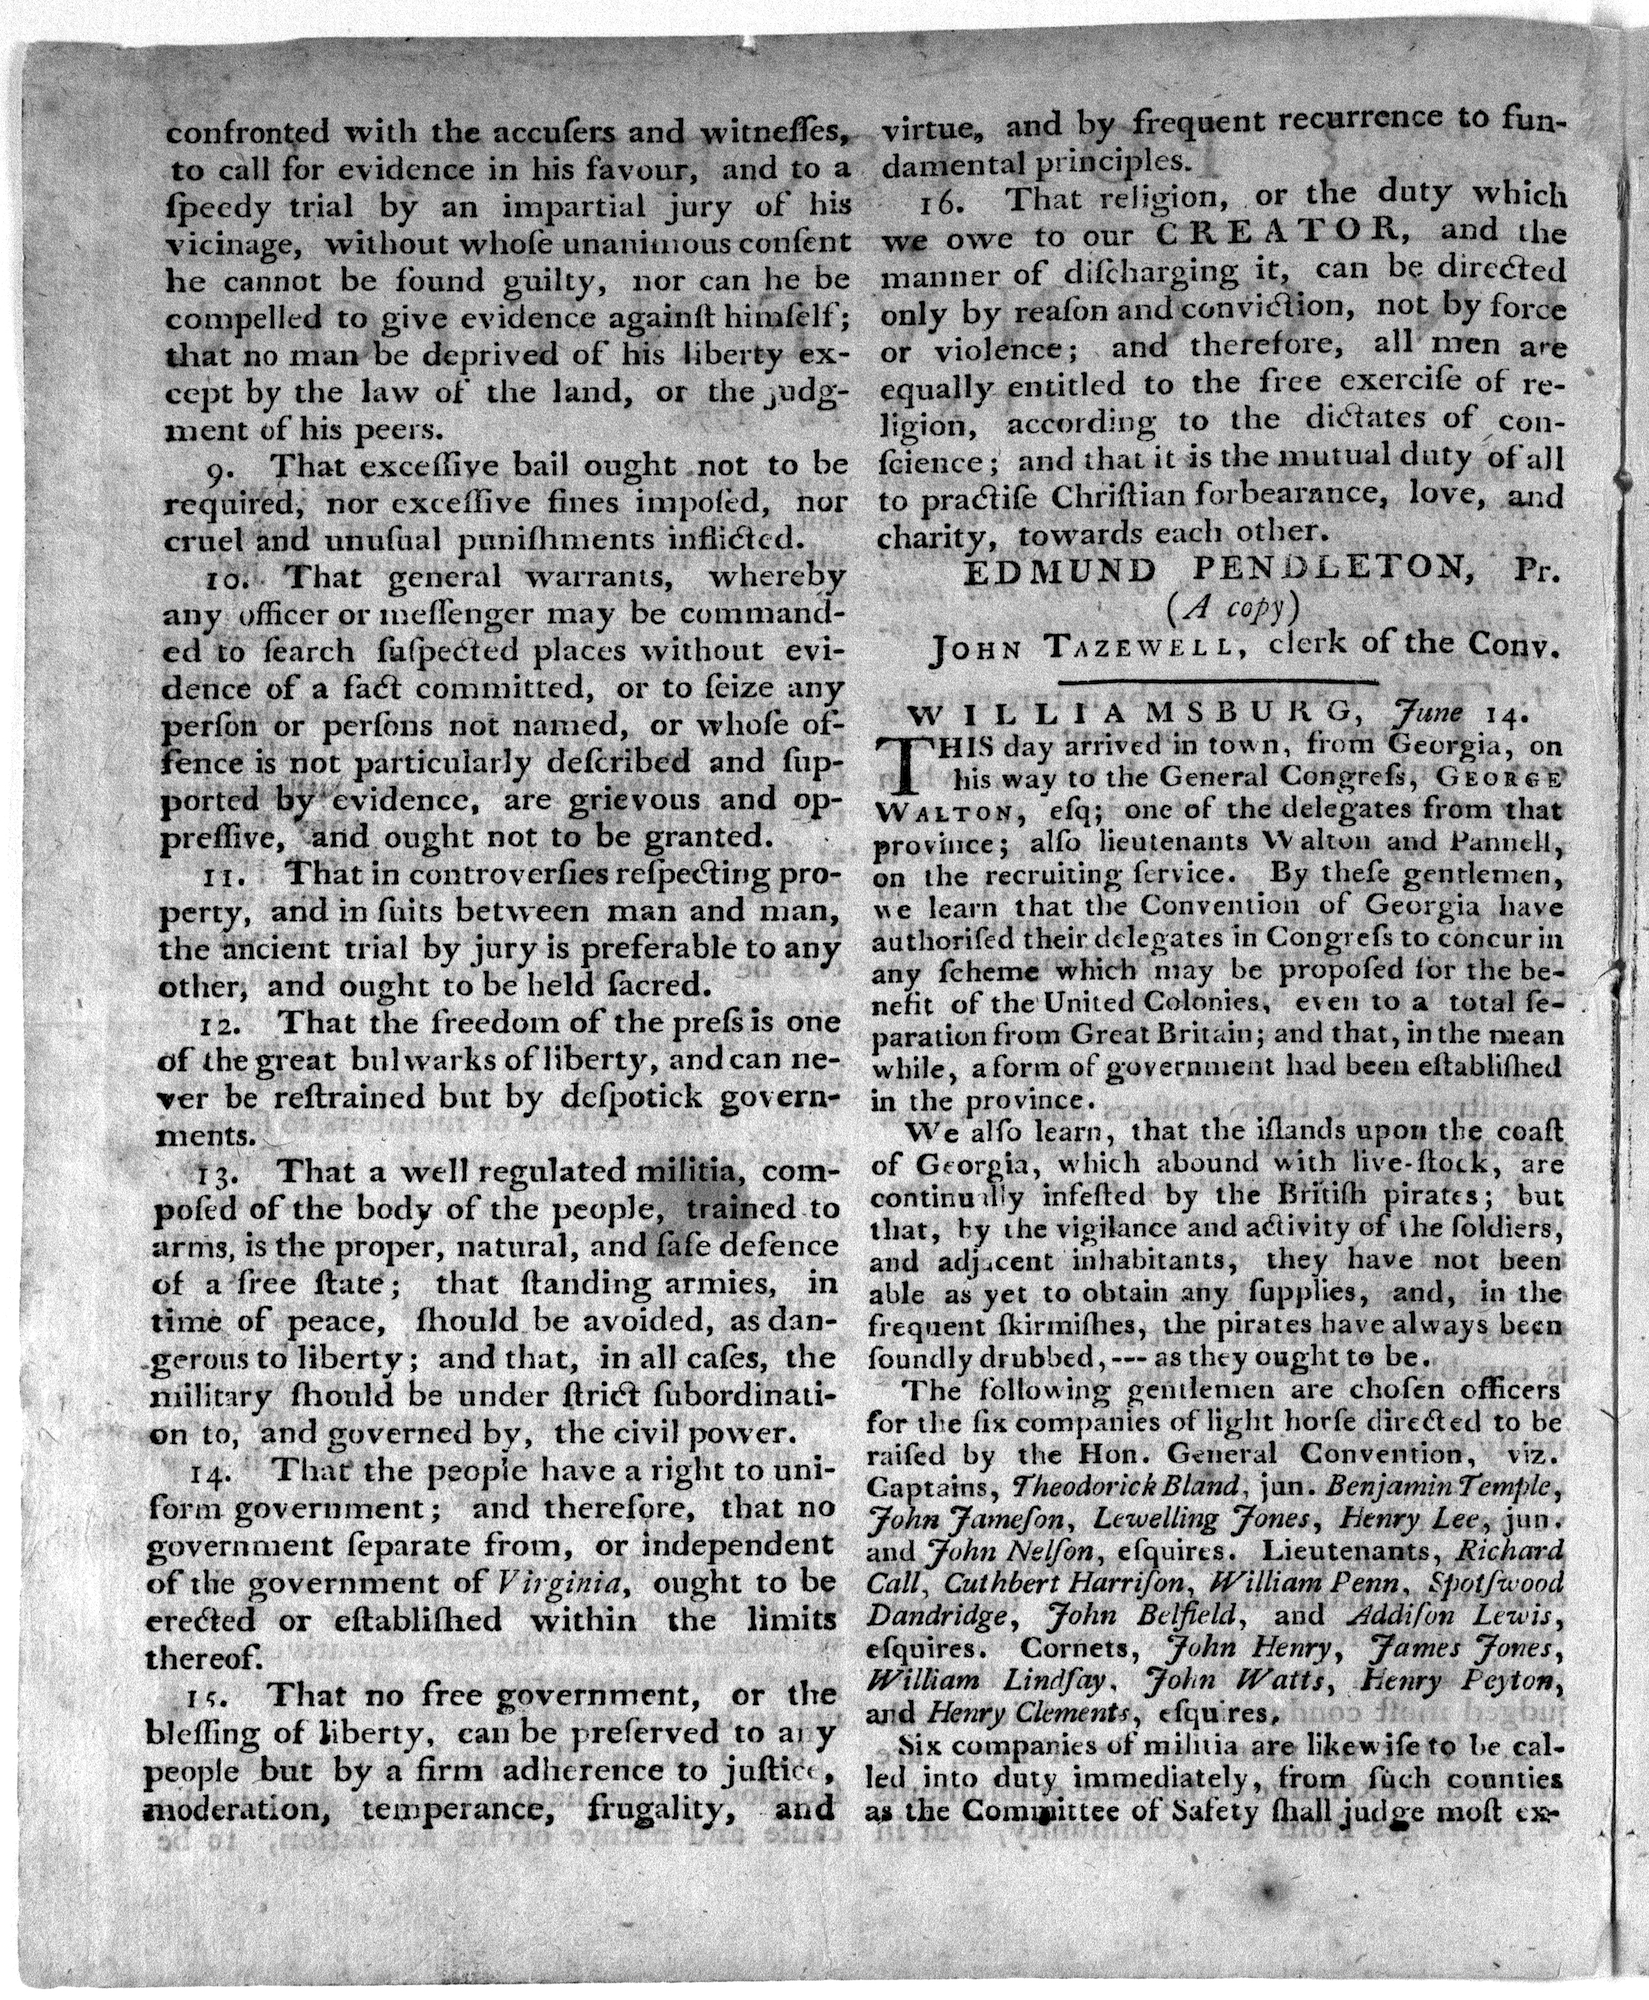 Virginia Declaration of Rights